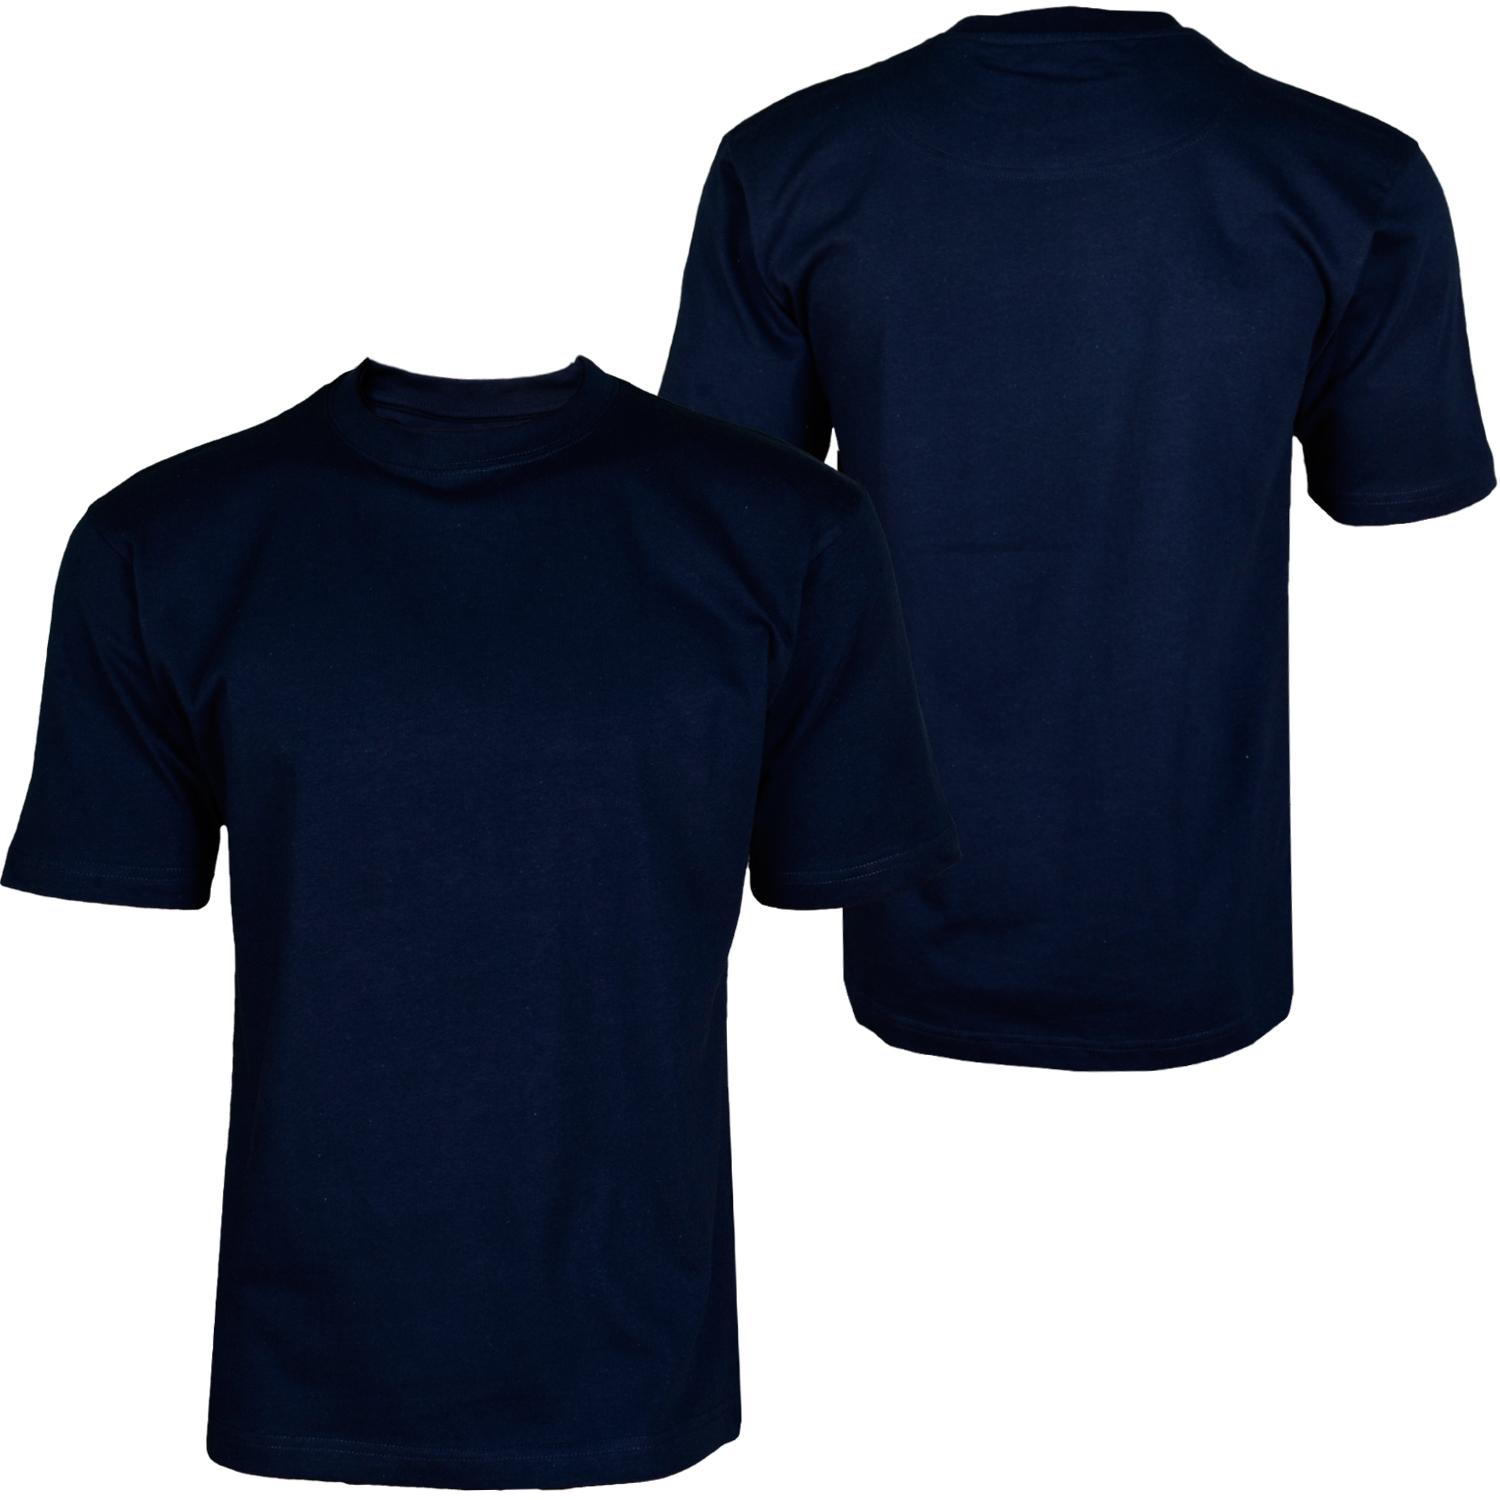 Foto Hoodboyz Basic Blank Camisetas Altas De Color Azul Oscuro